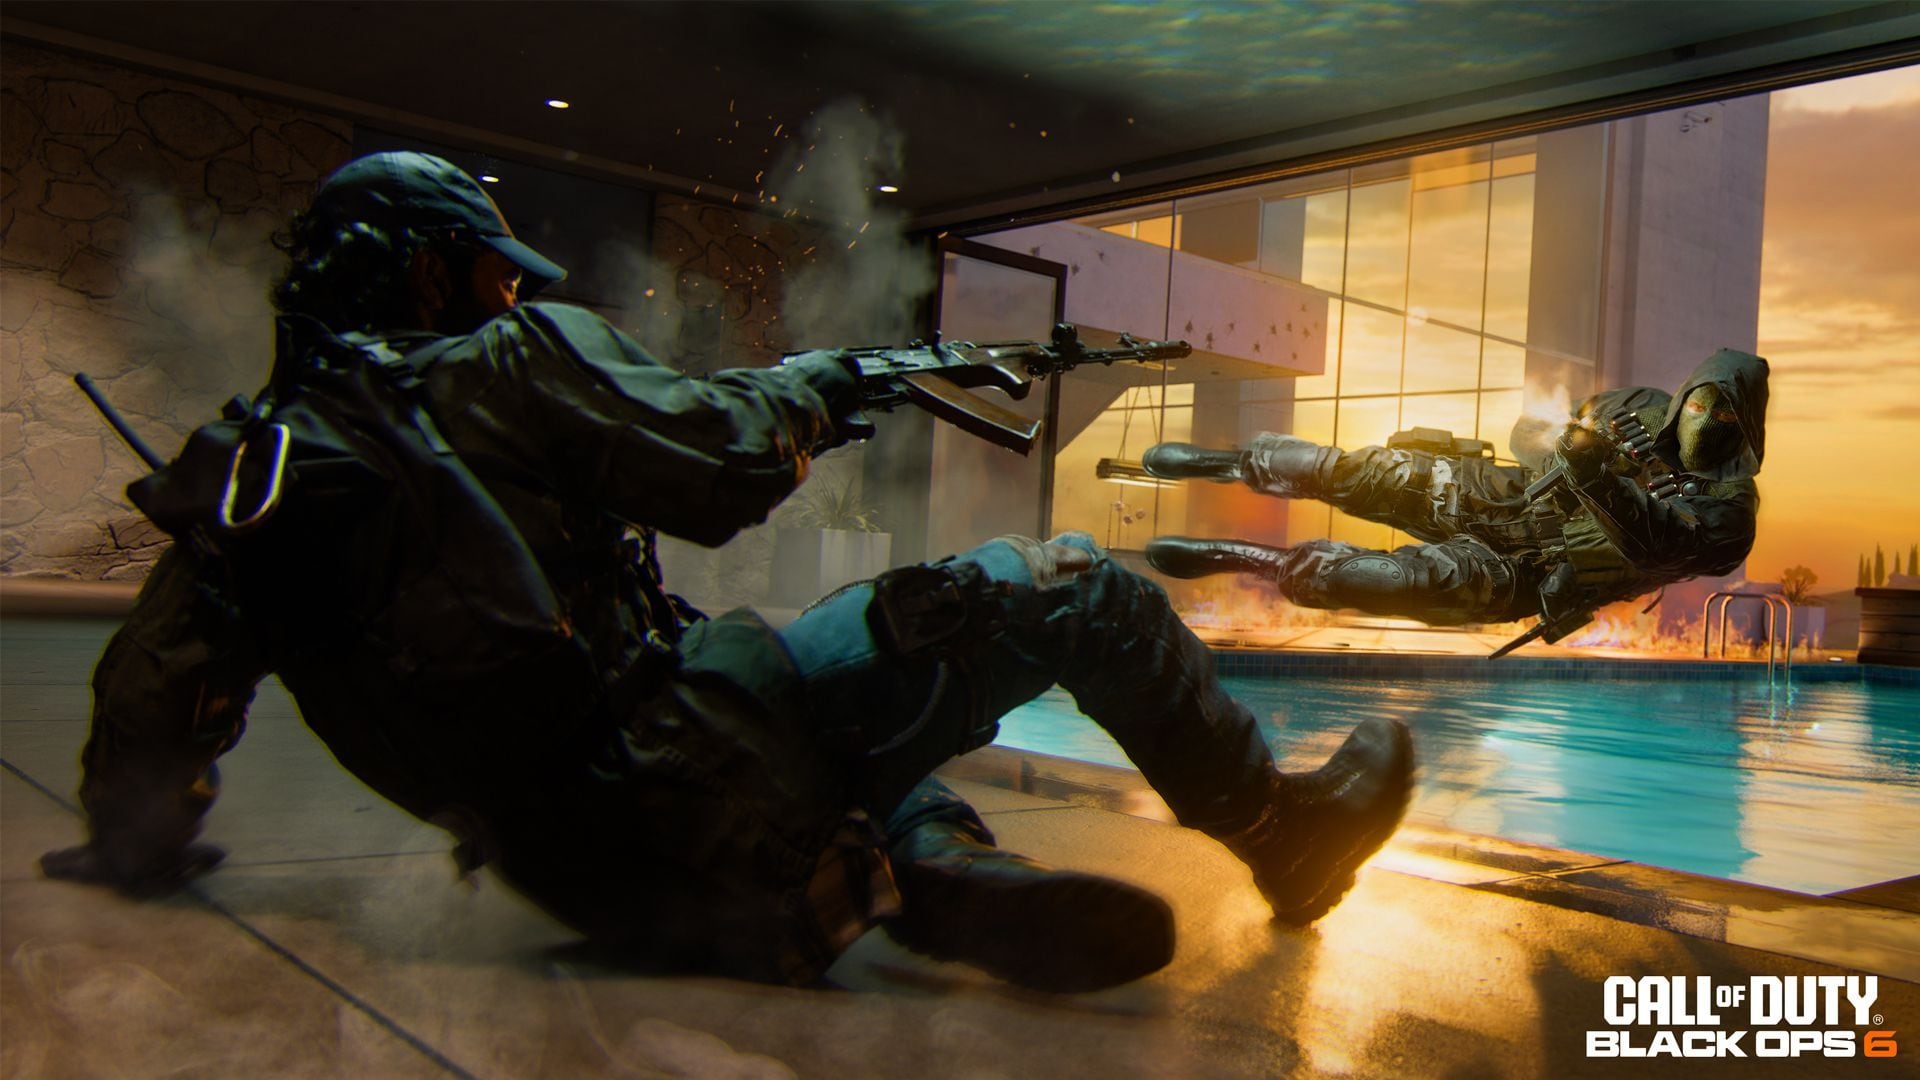 Call of Duty Black Ops 6 busca ser el juego más dinámico y rápido de toda la franquicia. Foto: Call of Duty.com